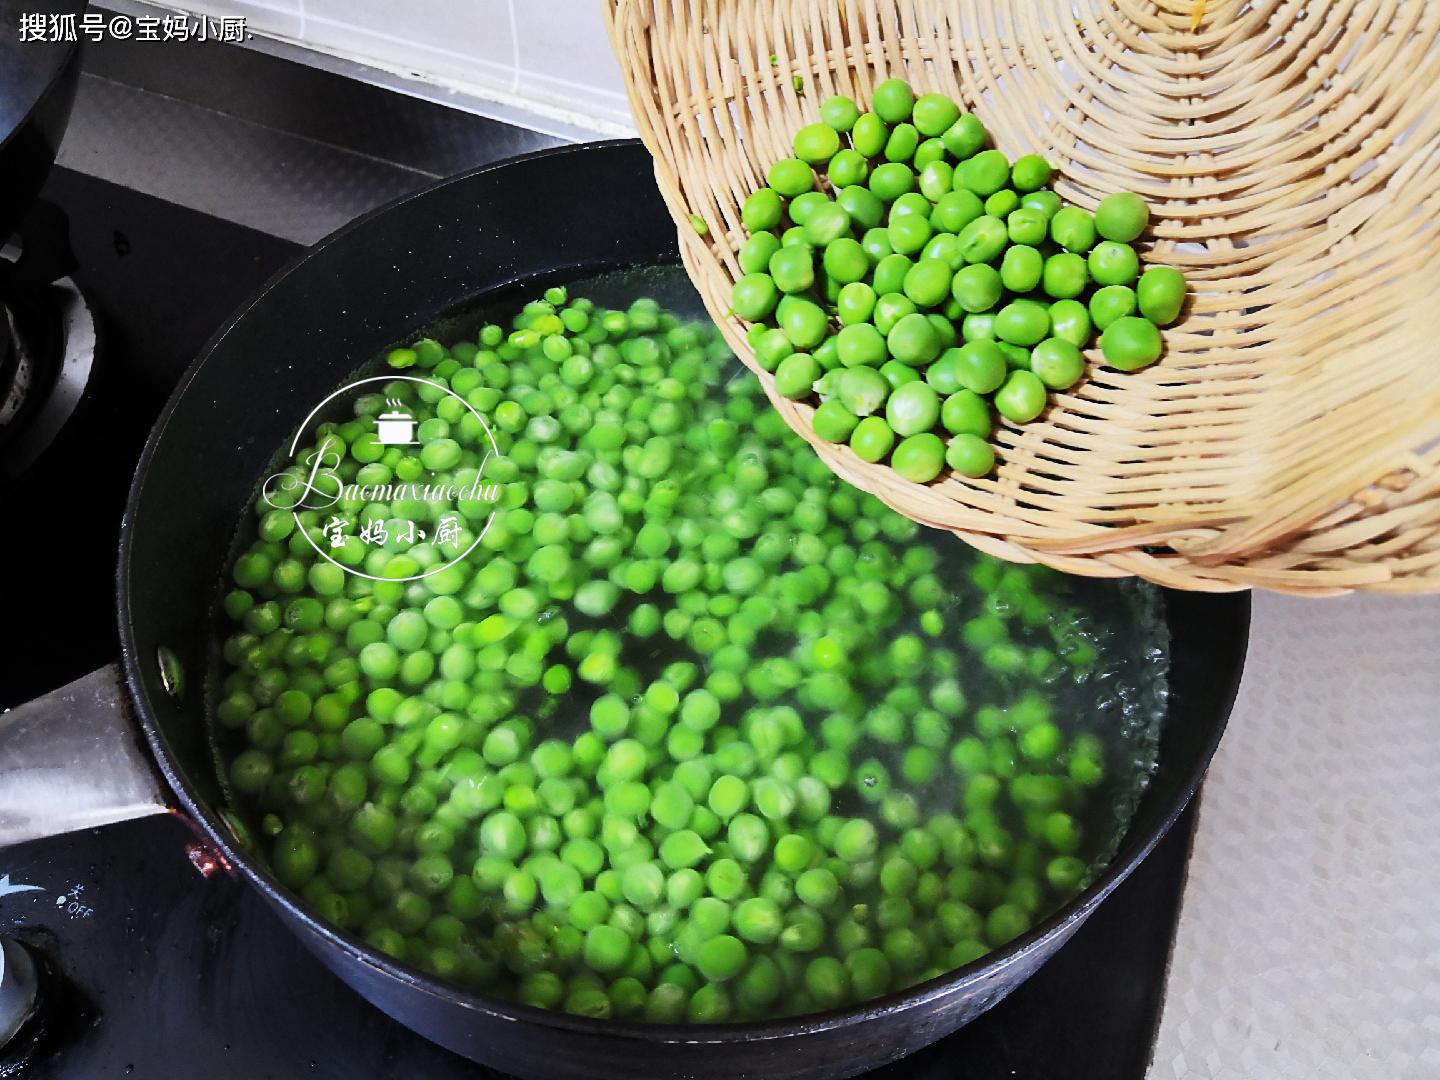 原创冷冻储存新鲜豌豆要焯水吗此方法做颜色翠绿如初口感好